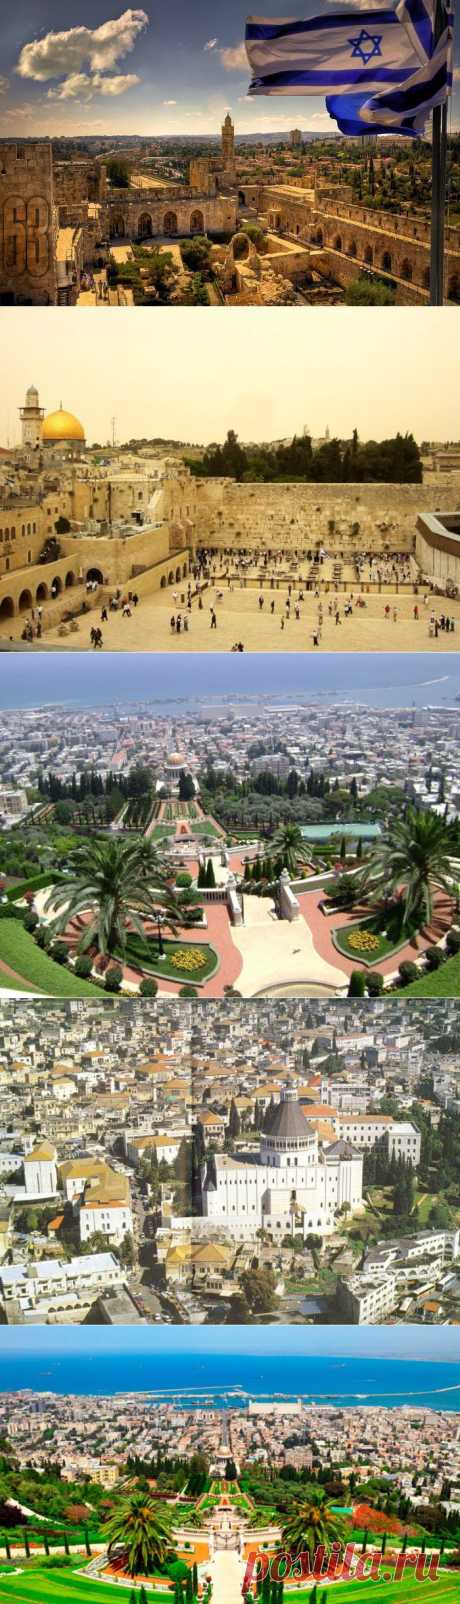 Достопримечательности и святые места Израиля / Туристический спутник